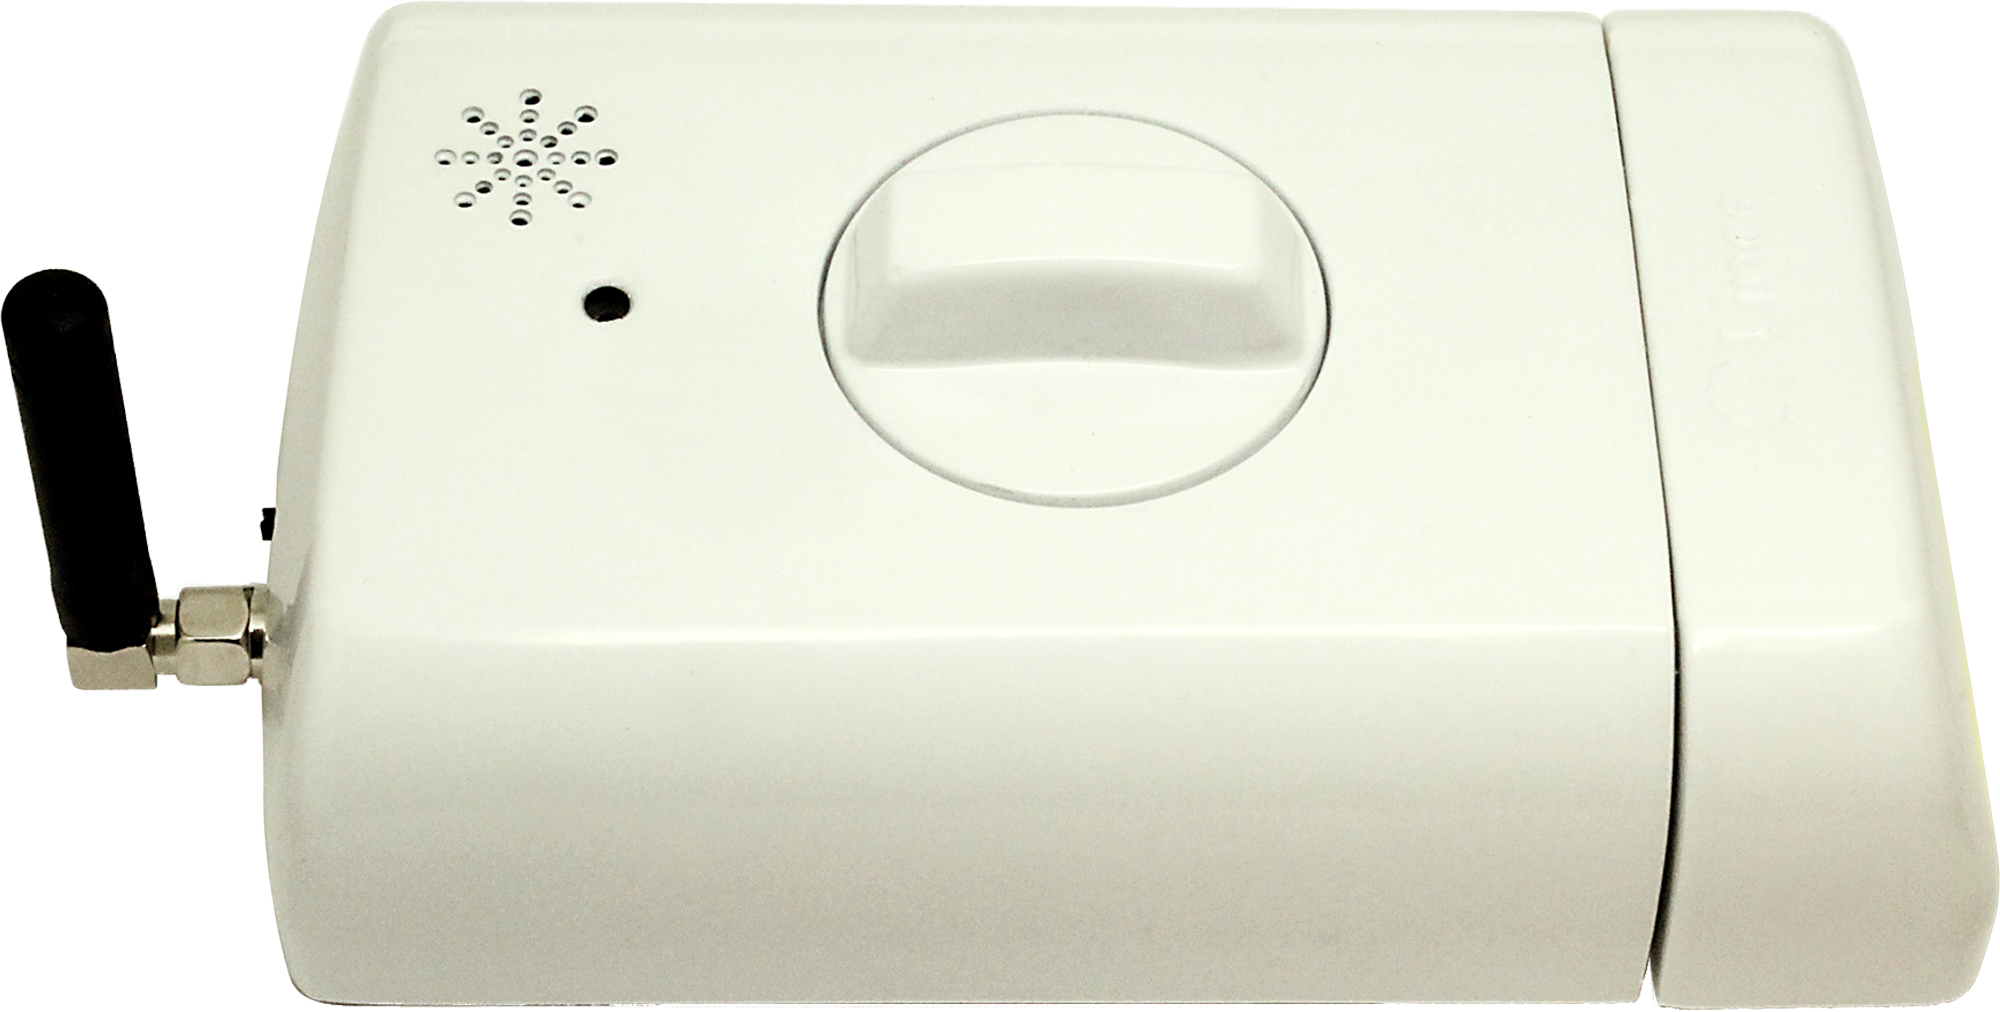 Cerradura eléctrica lince blanco con mando a distancia